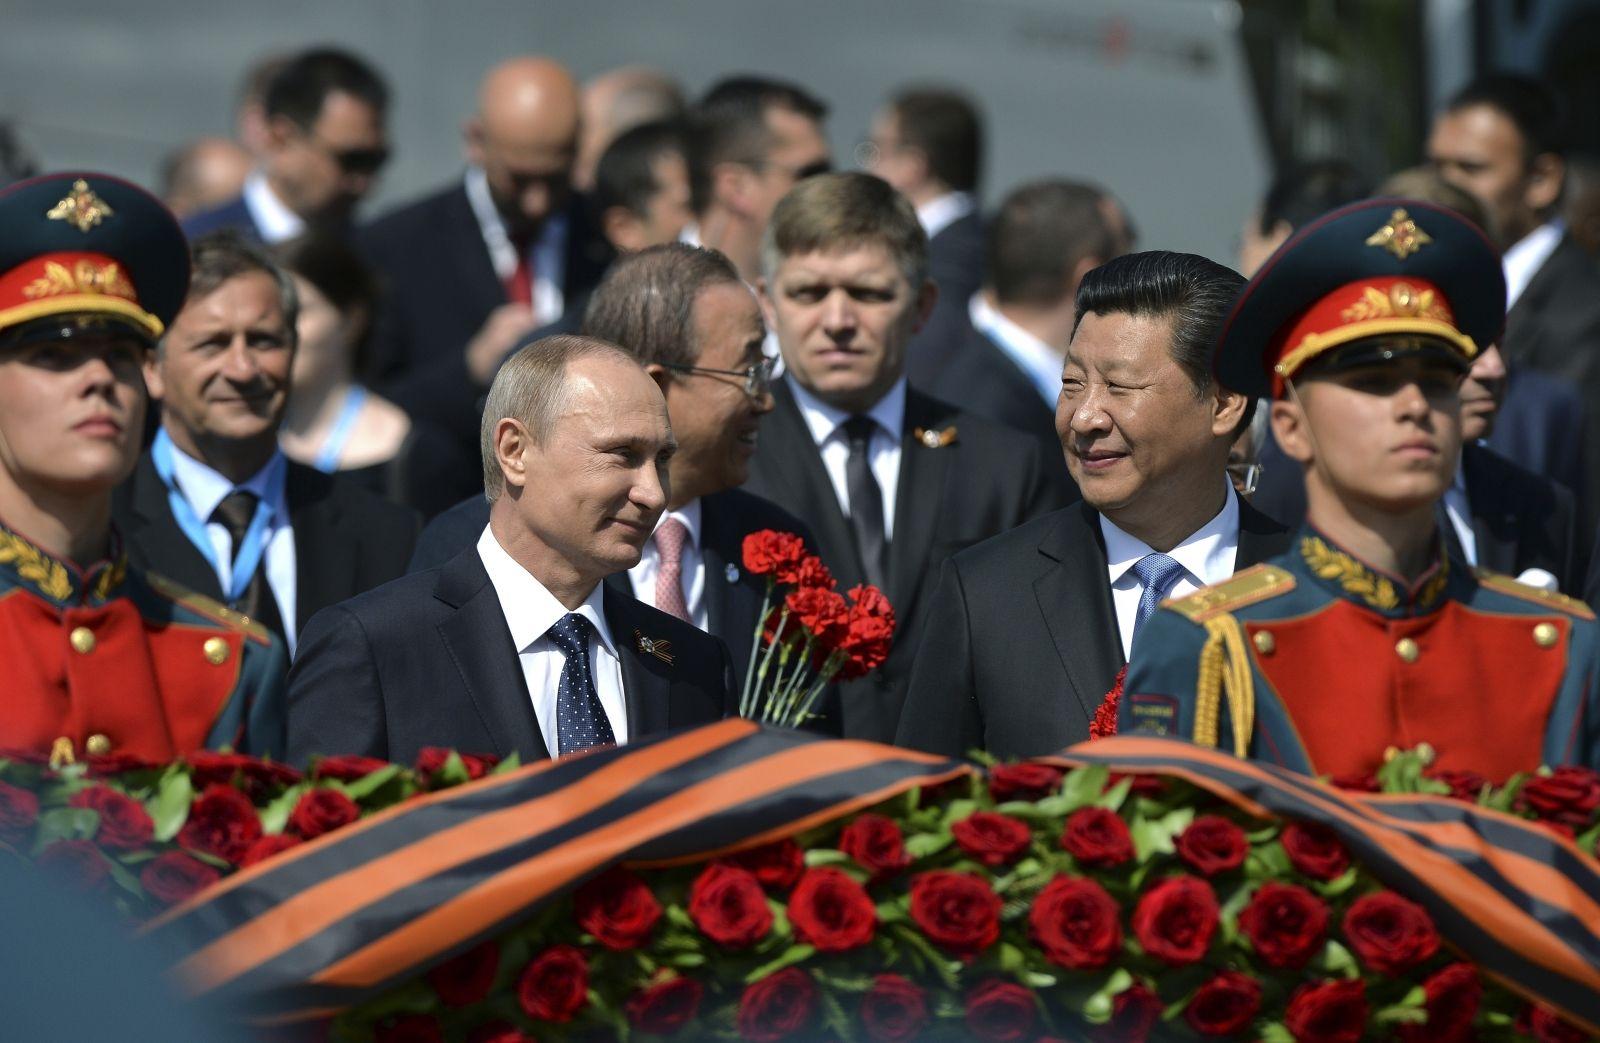 Путин раскрыл, какое значение придает участию иностранных лидеров в параде Победы